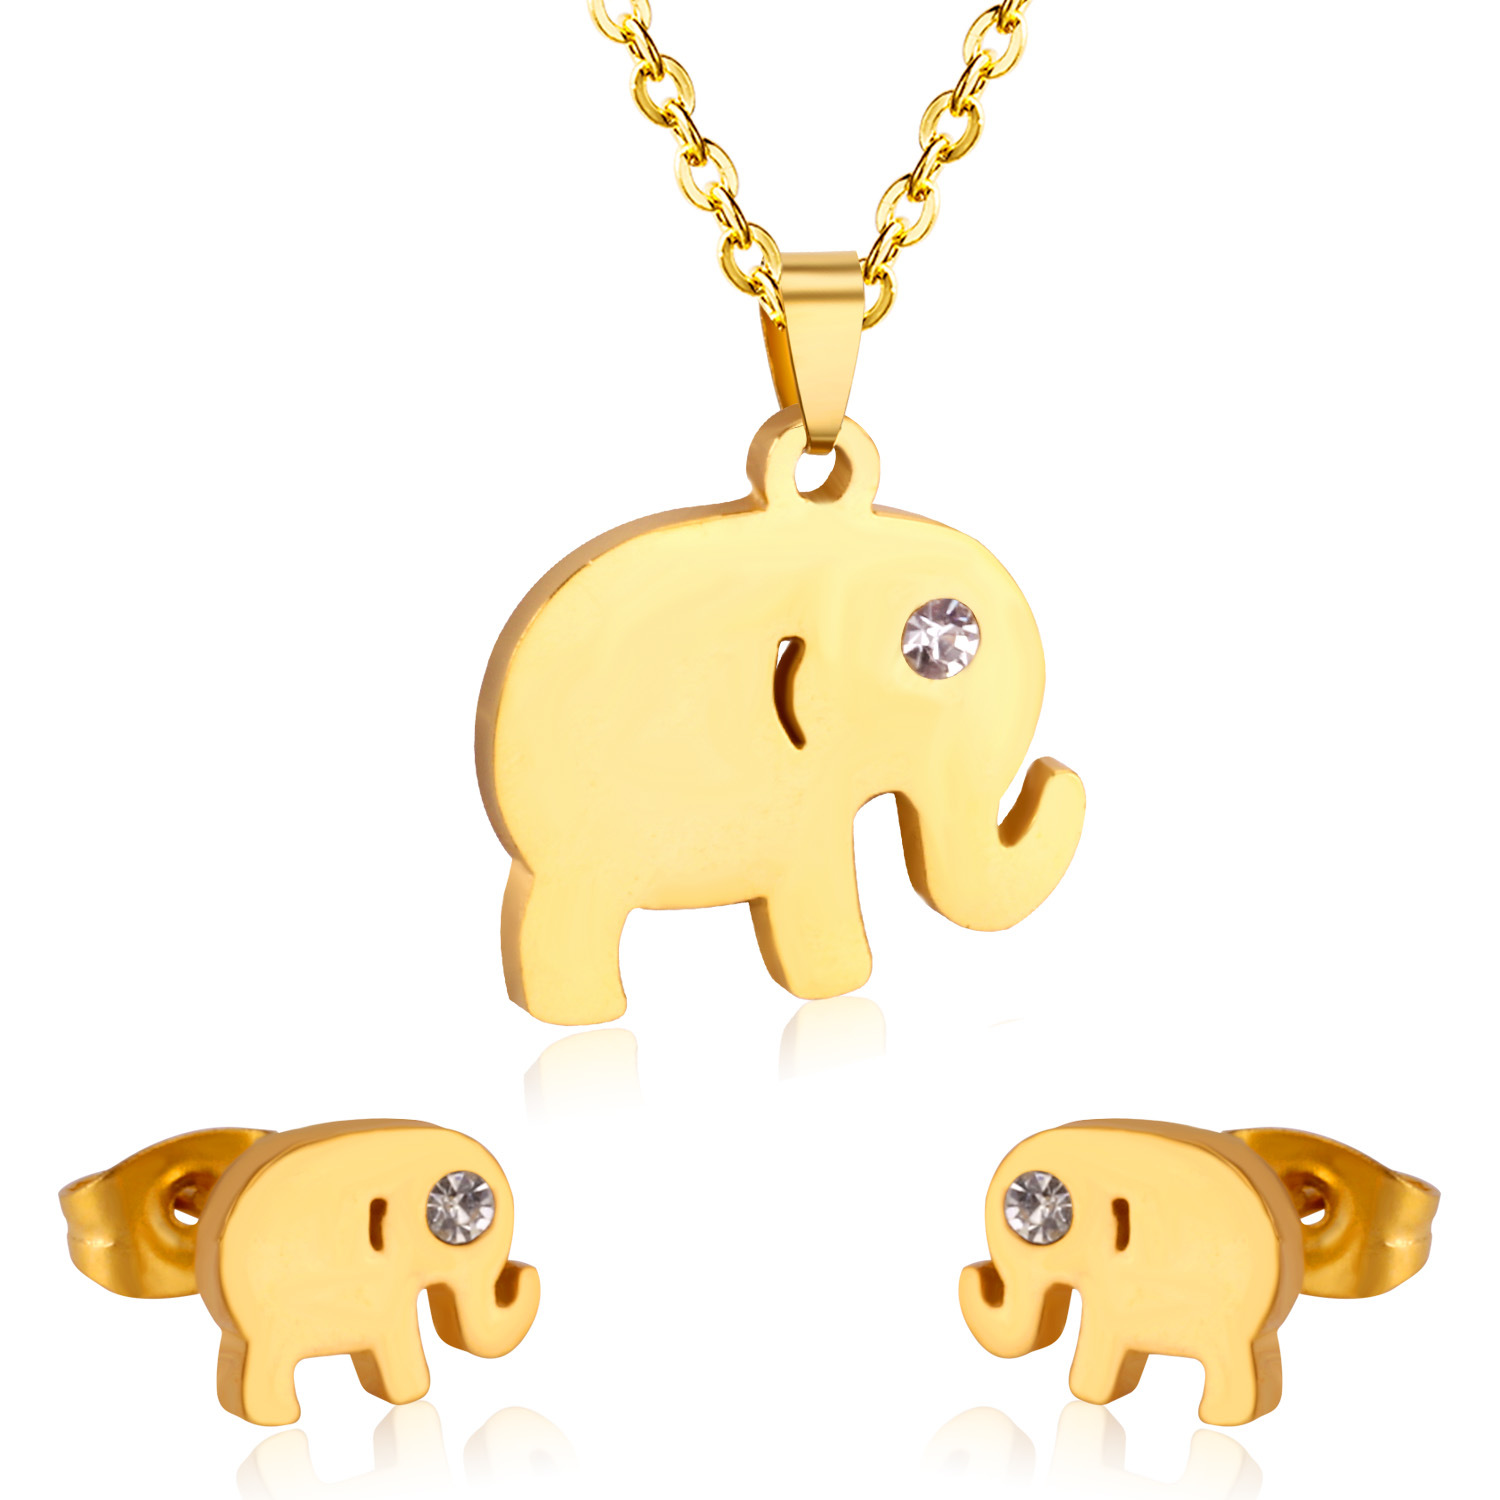 2:golden elephant